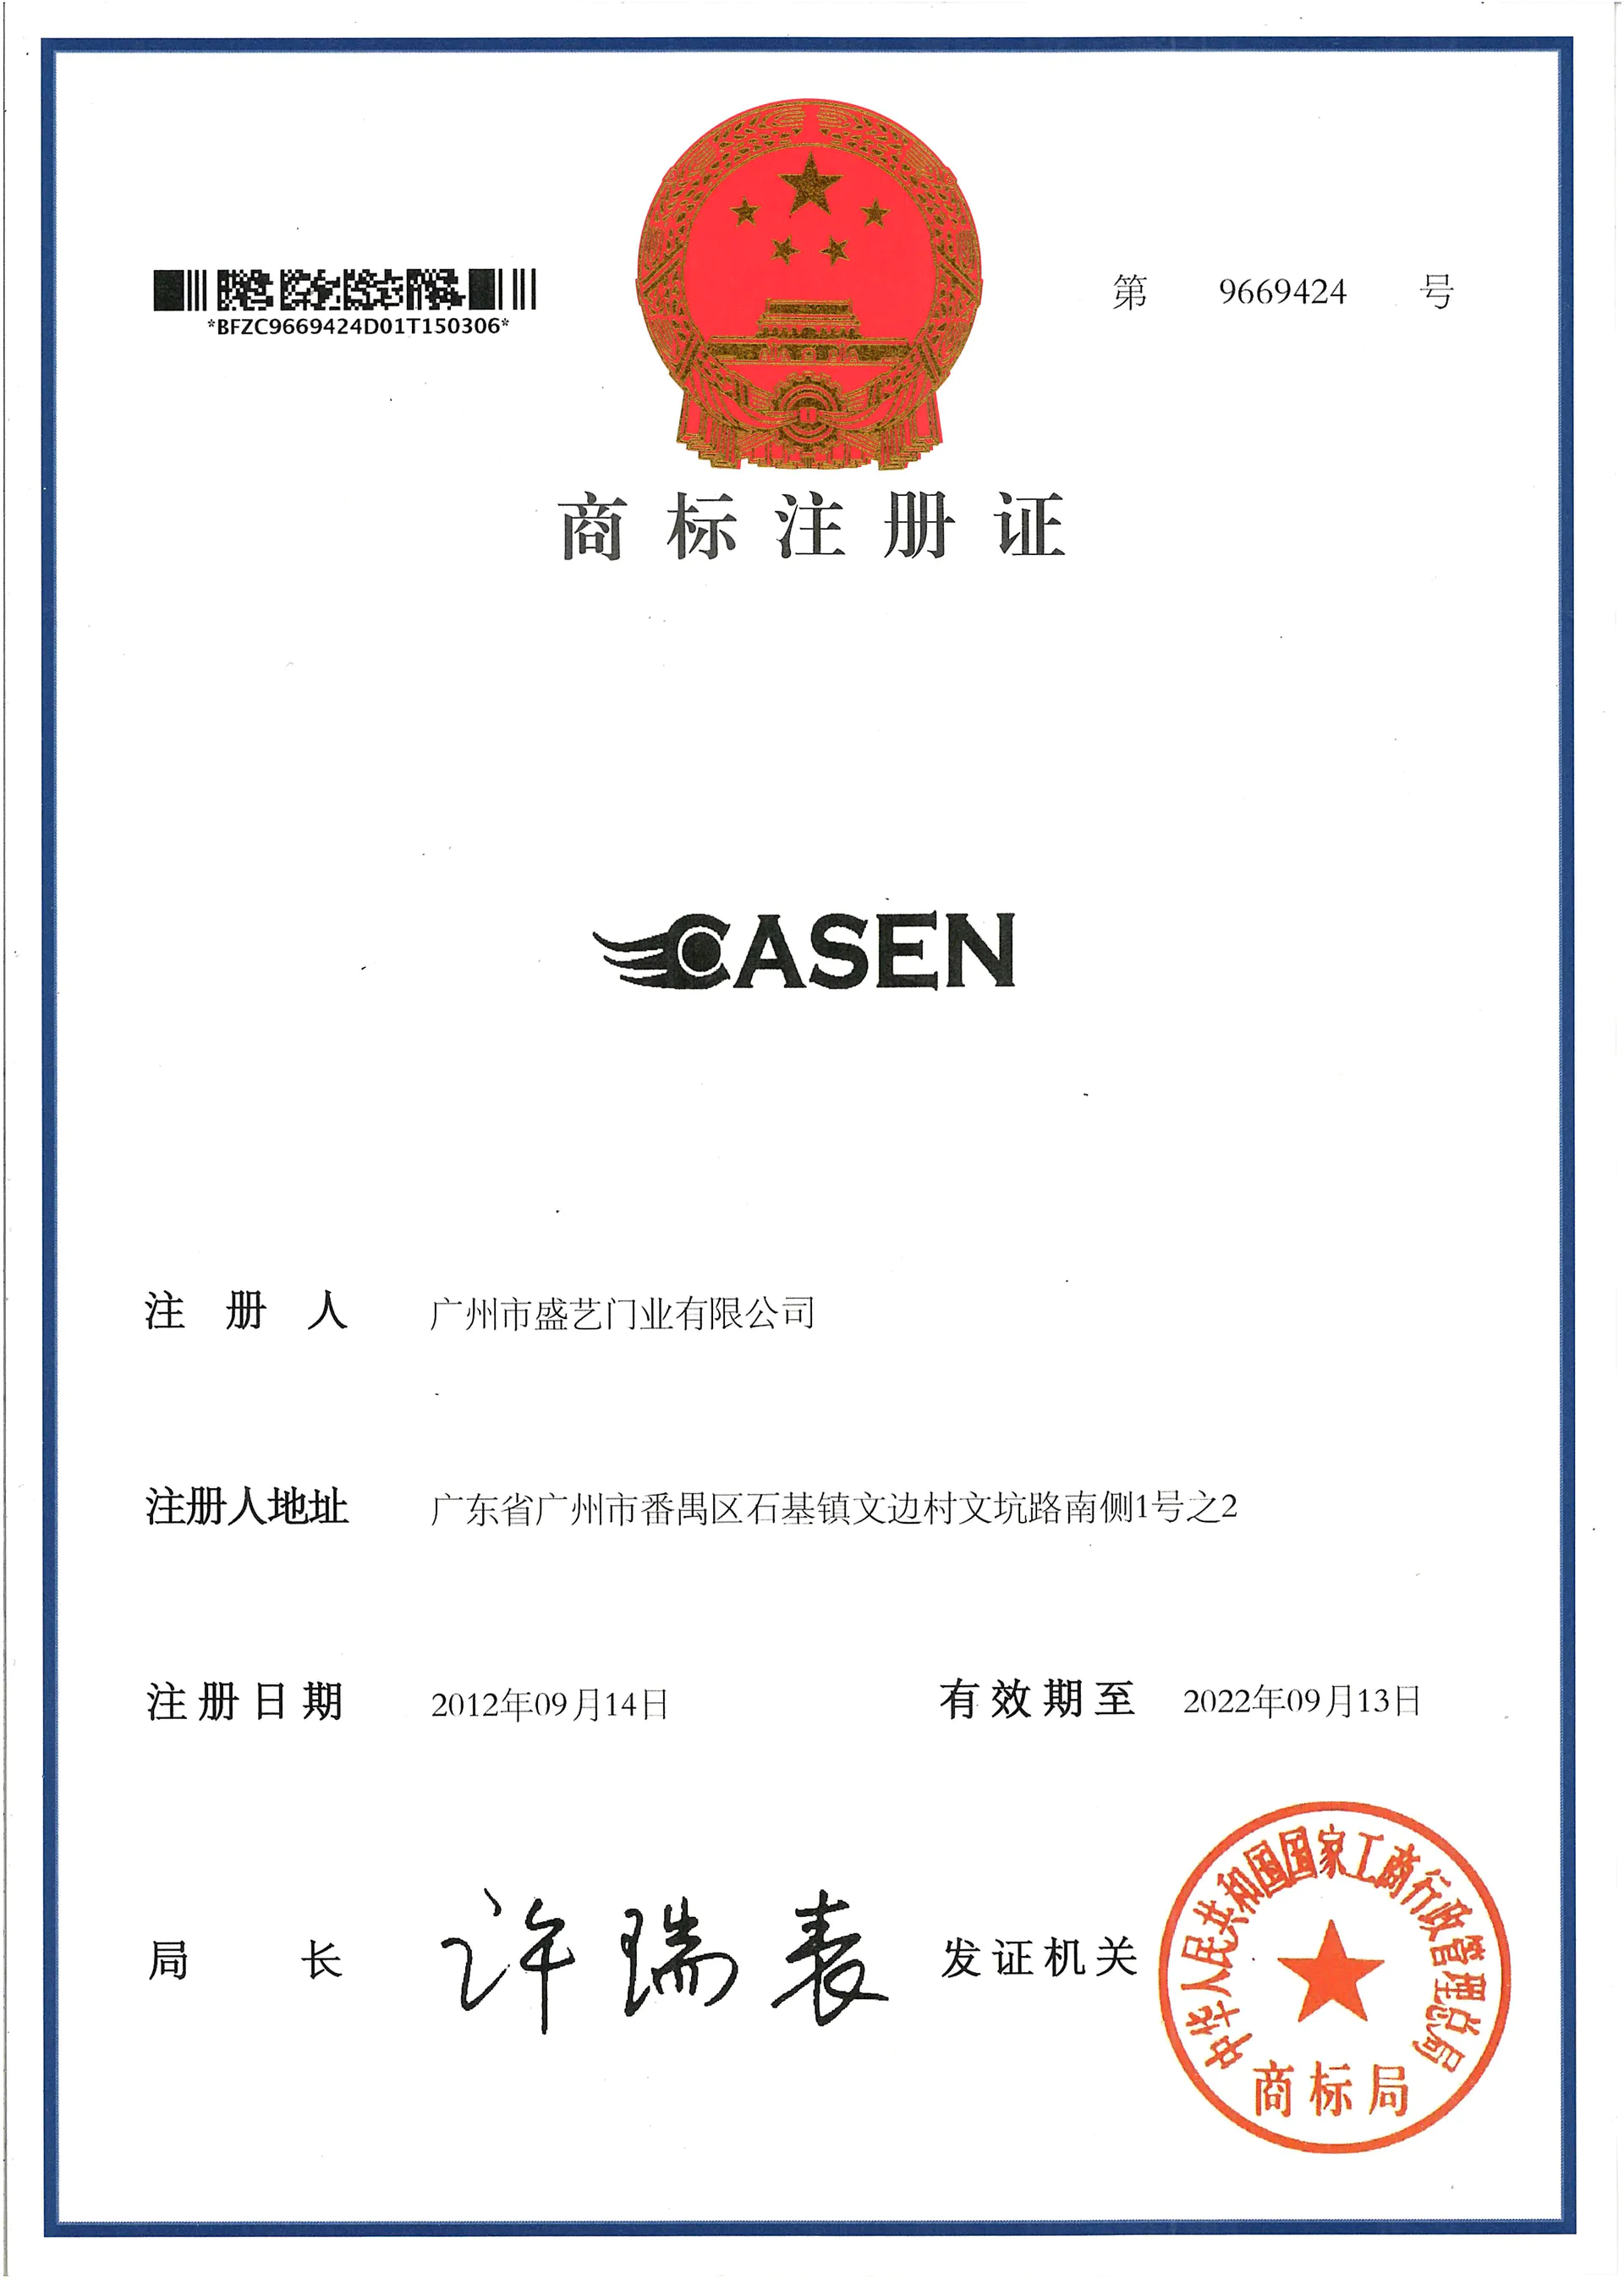 CASEN trademark certificate